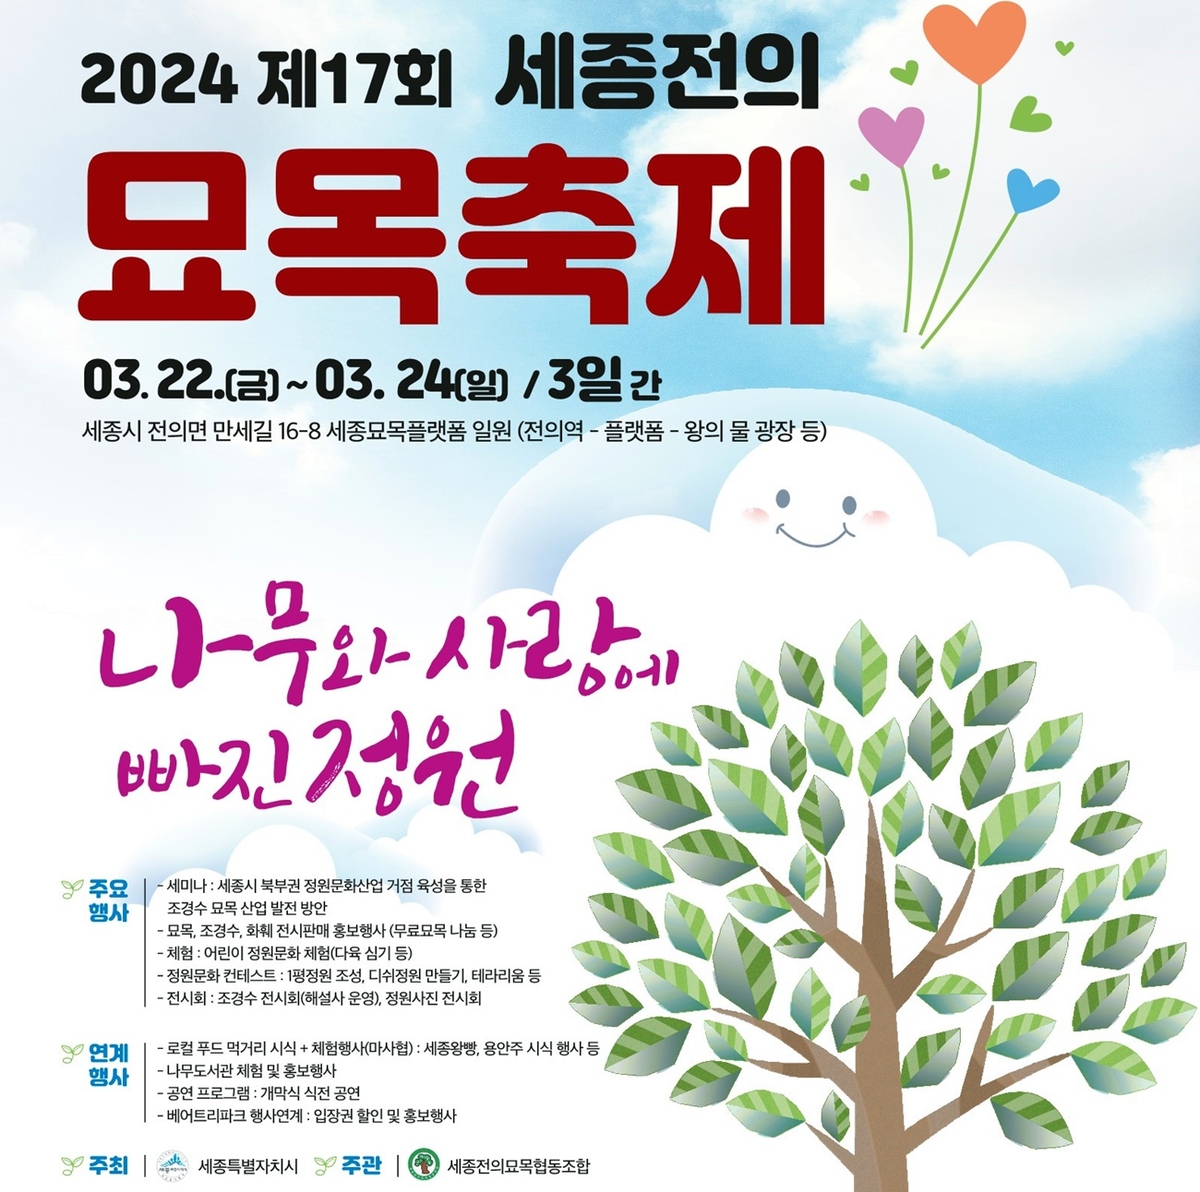 '나무와 사랑에 빠진 정원' 세종전의묘목축제 내일 개막